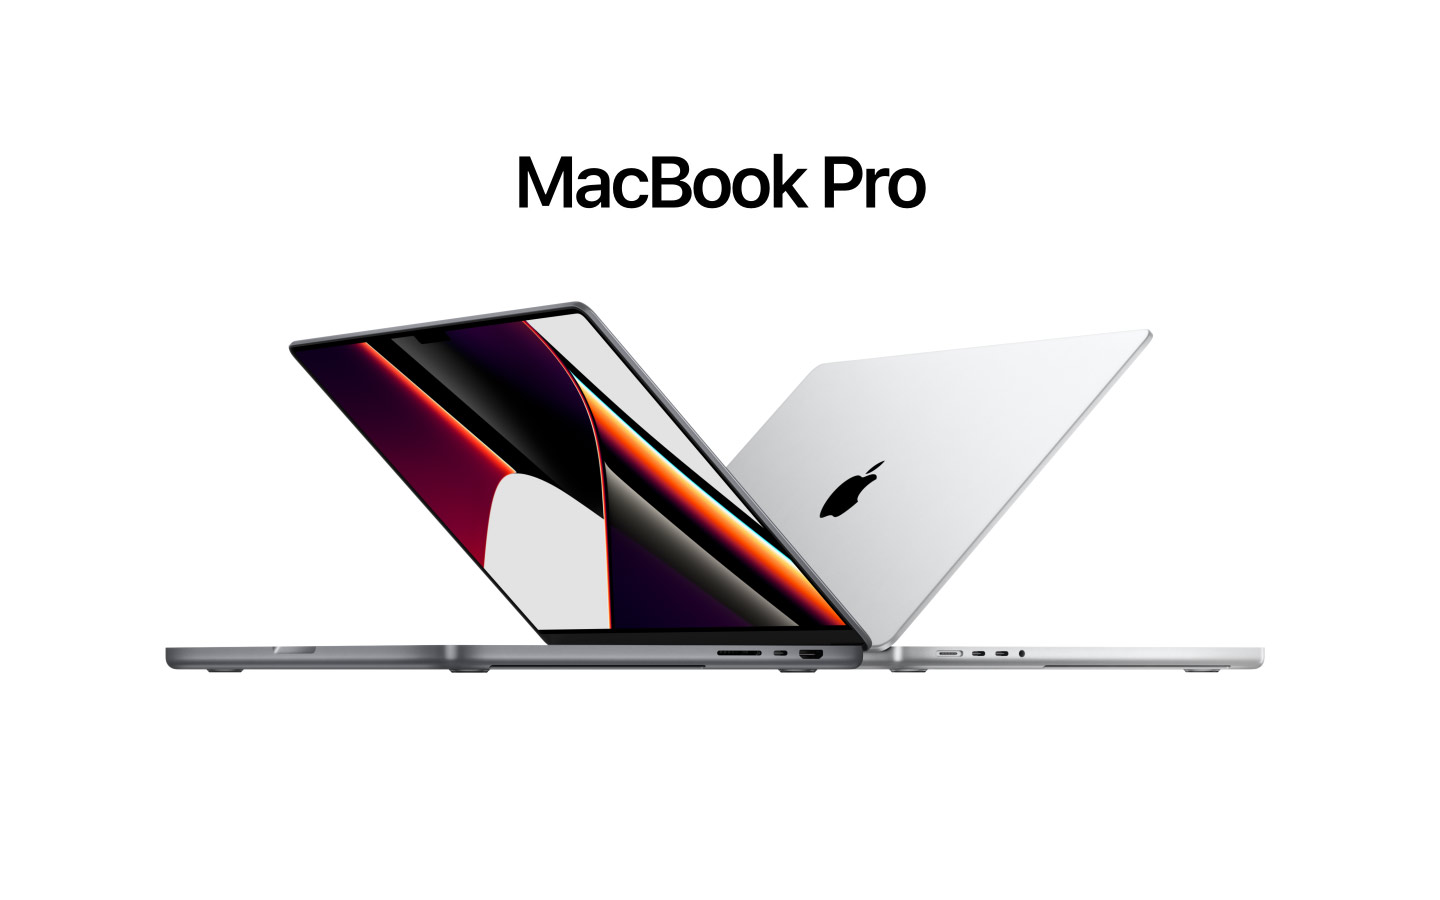 Immagine pubblicata in relazione al seguente contenuto: Apple potrebbe lanciare i MacBook Pro con SoC M2 Pro e M2 Max a marzo 2023 | Nome immagine: news33817_MacBook-Pro_2022_1.jpg